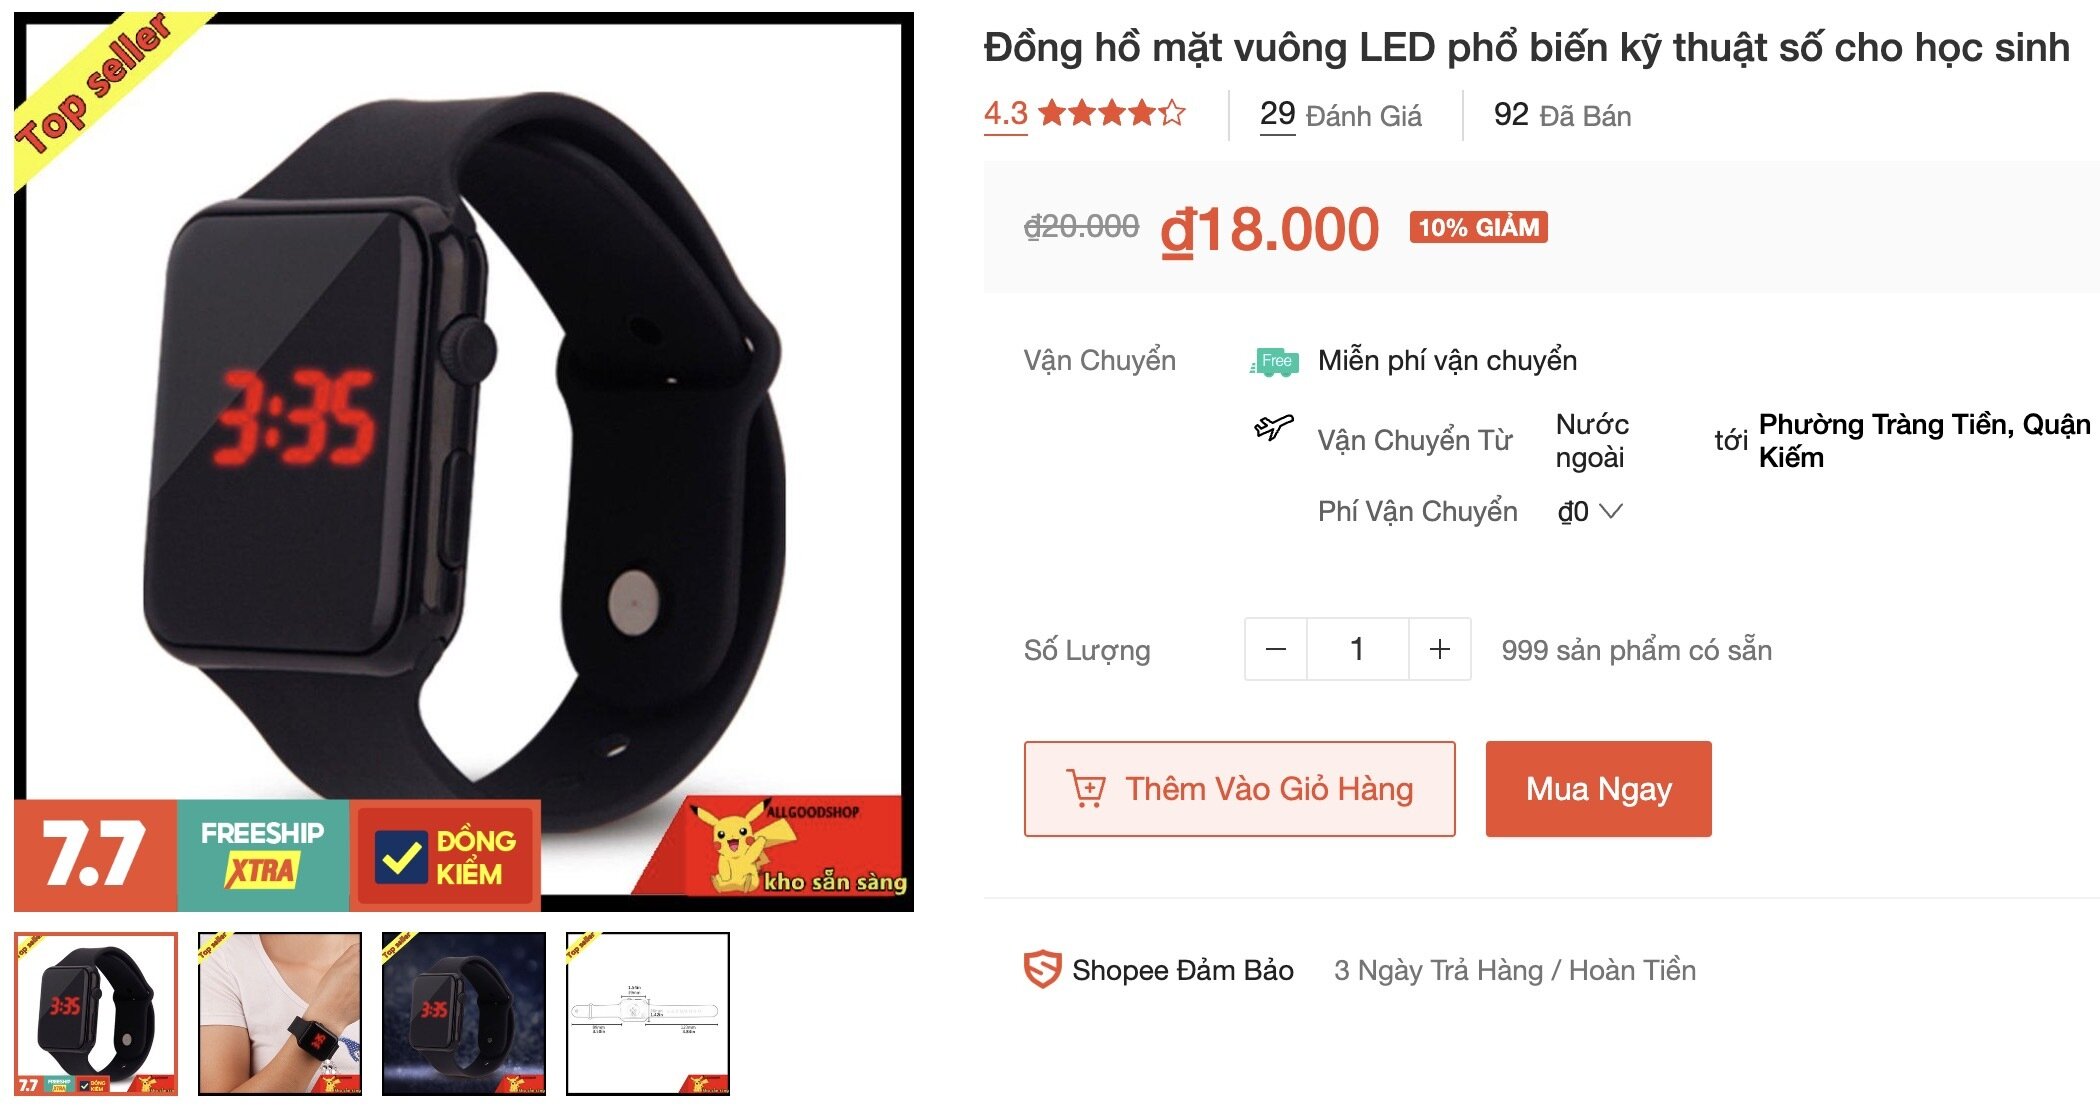 Chiếc đồng hồ chị Minh nhận được chỉ có giá 18.000 đồng trên sàn thương mại điện tử. (Ảnh chụp màn hình)